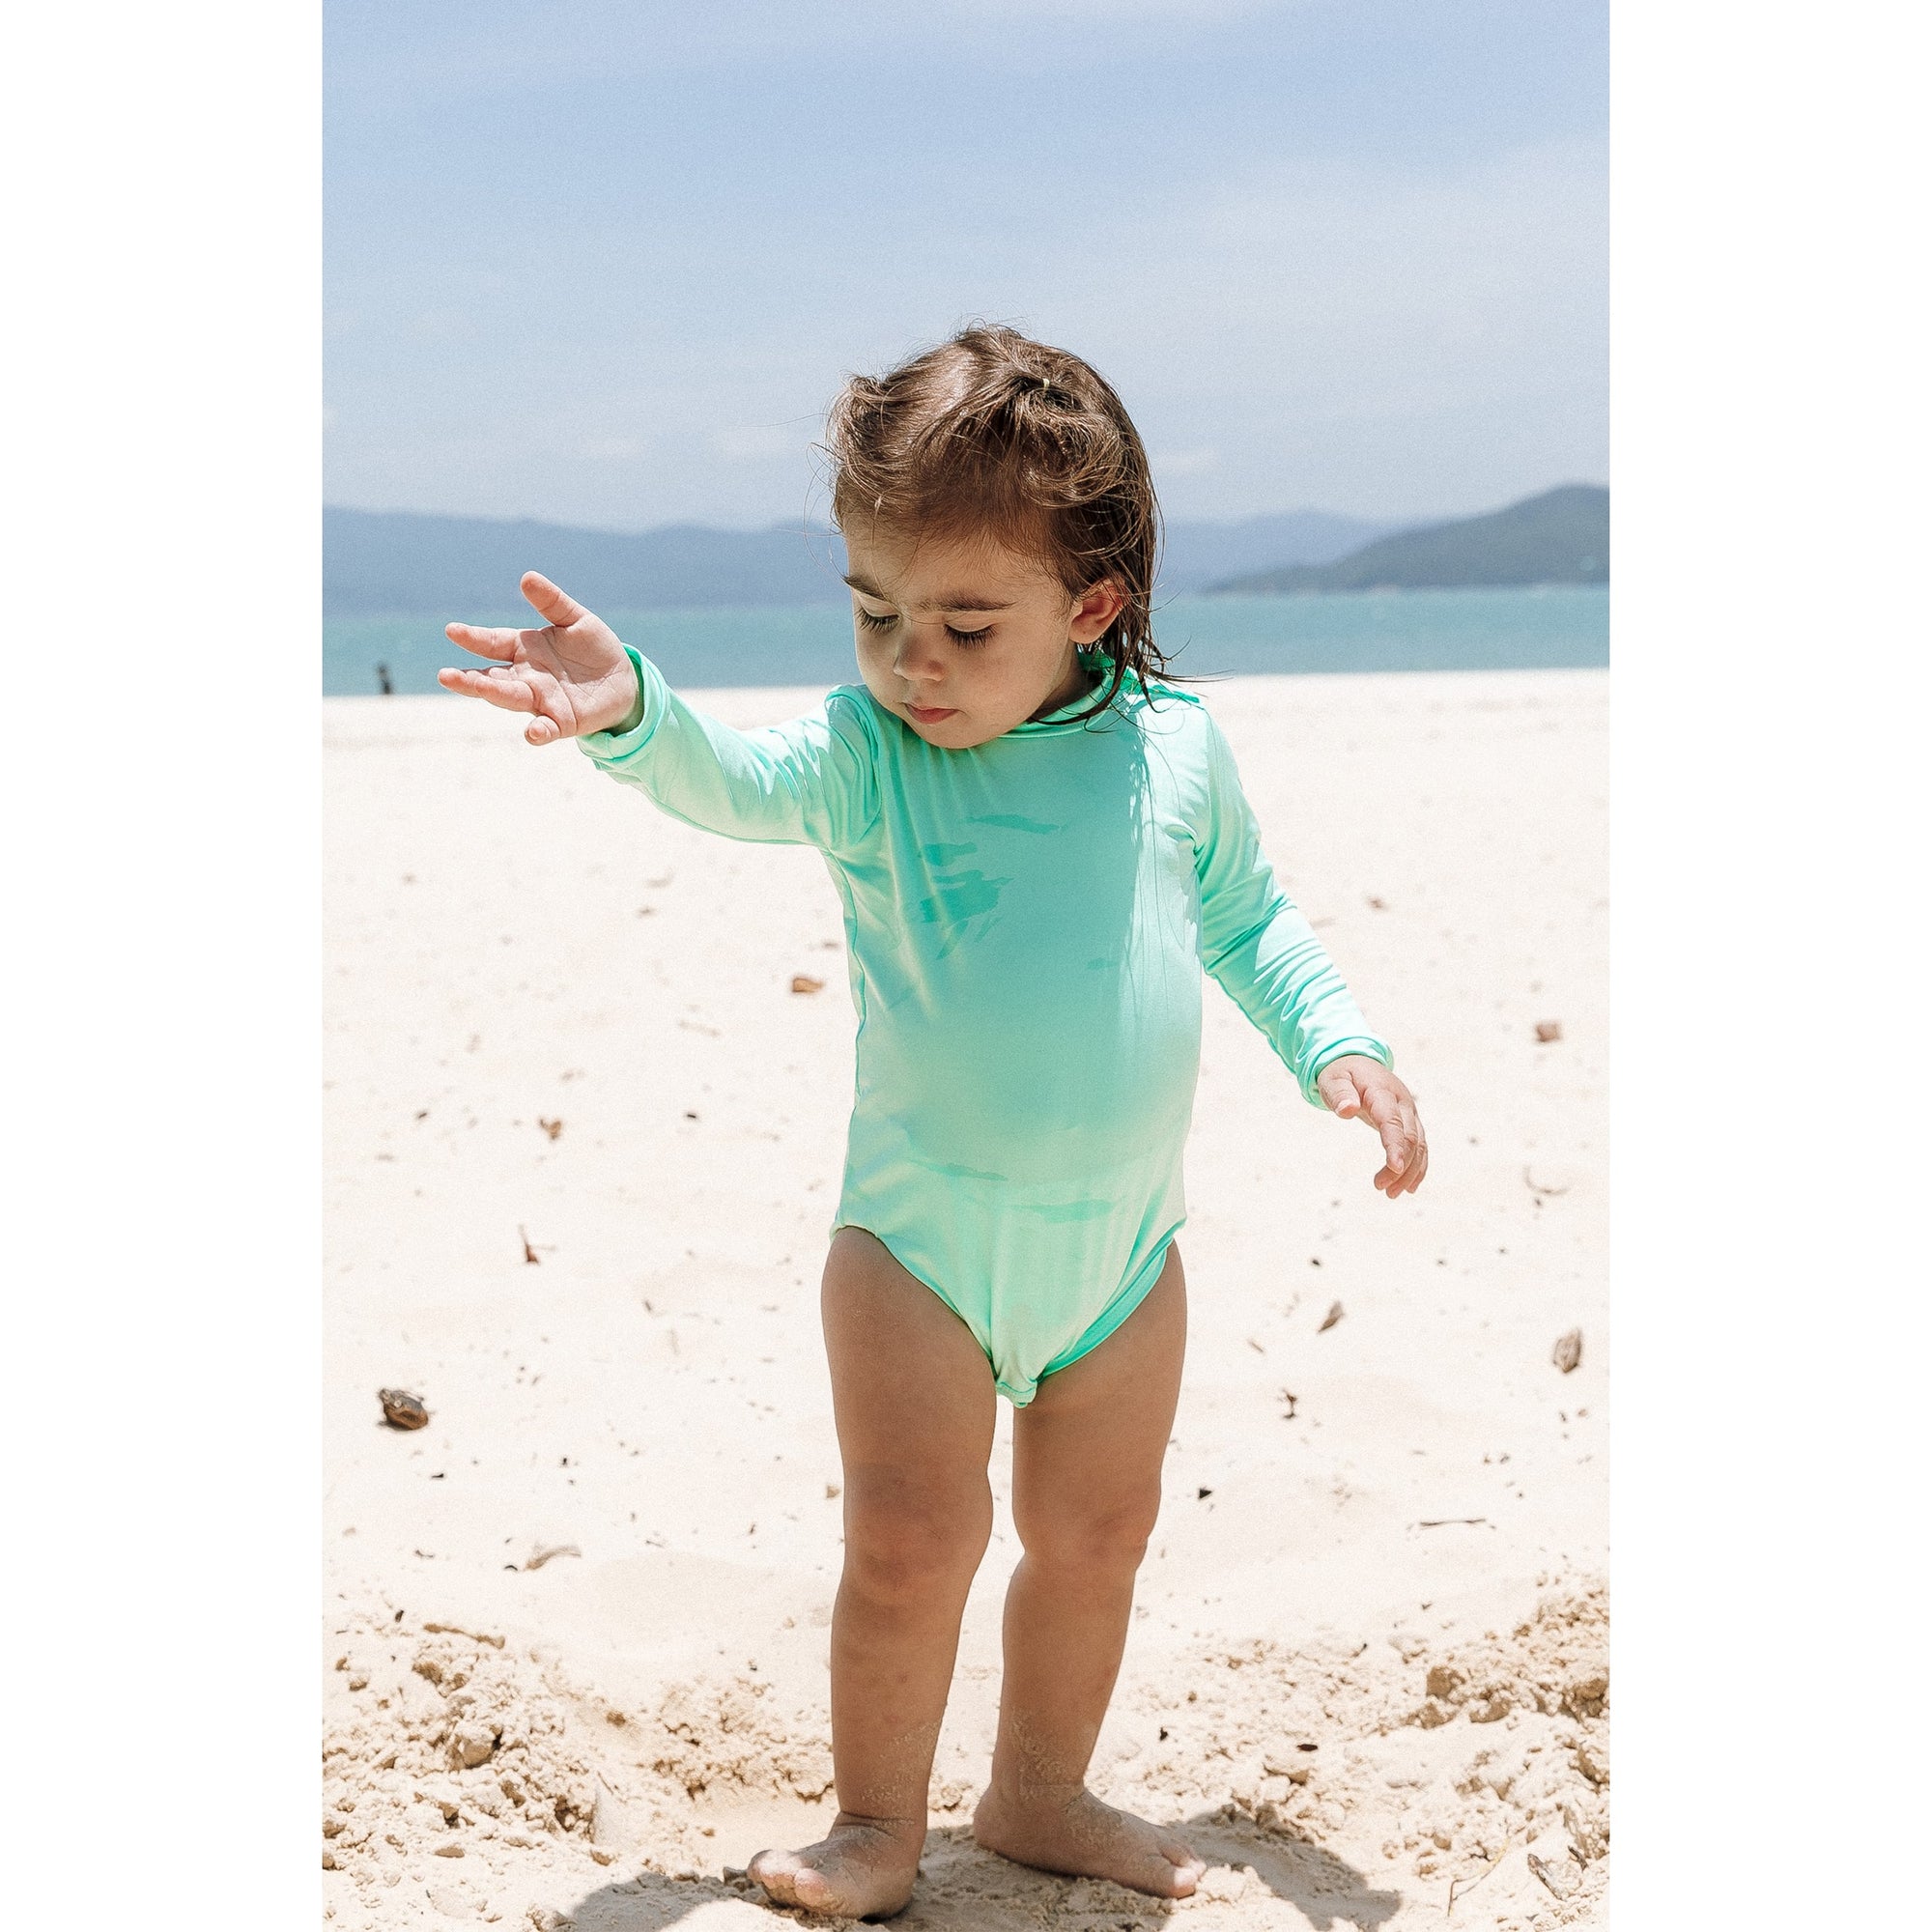 Body Moda Praia para Bebês e Crianças, com Protecao UV, da Lili Sampedro na cor Lisa Verde Claro.